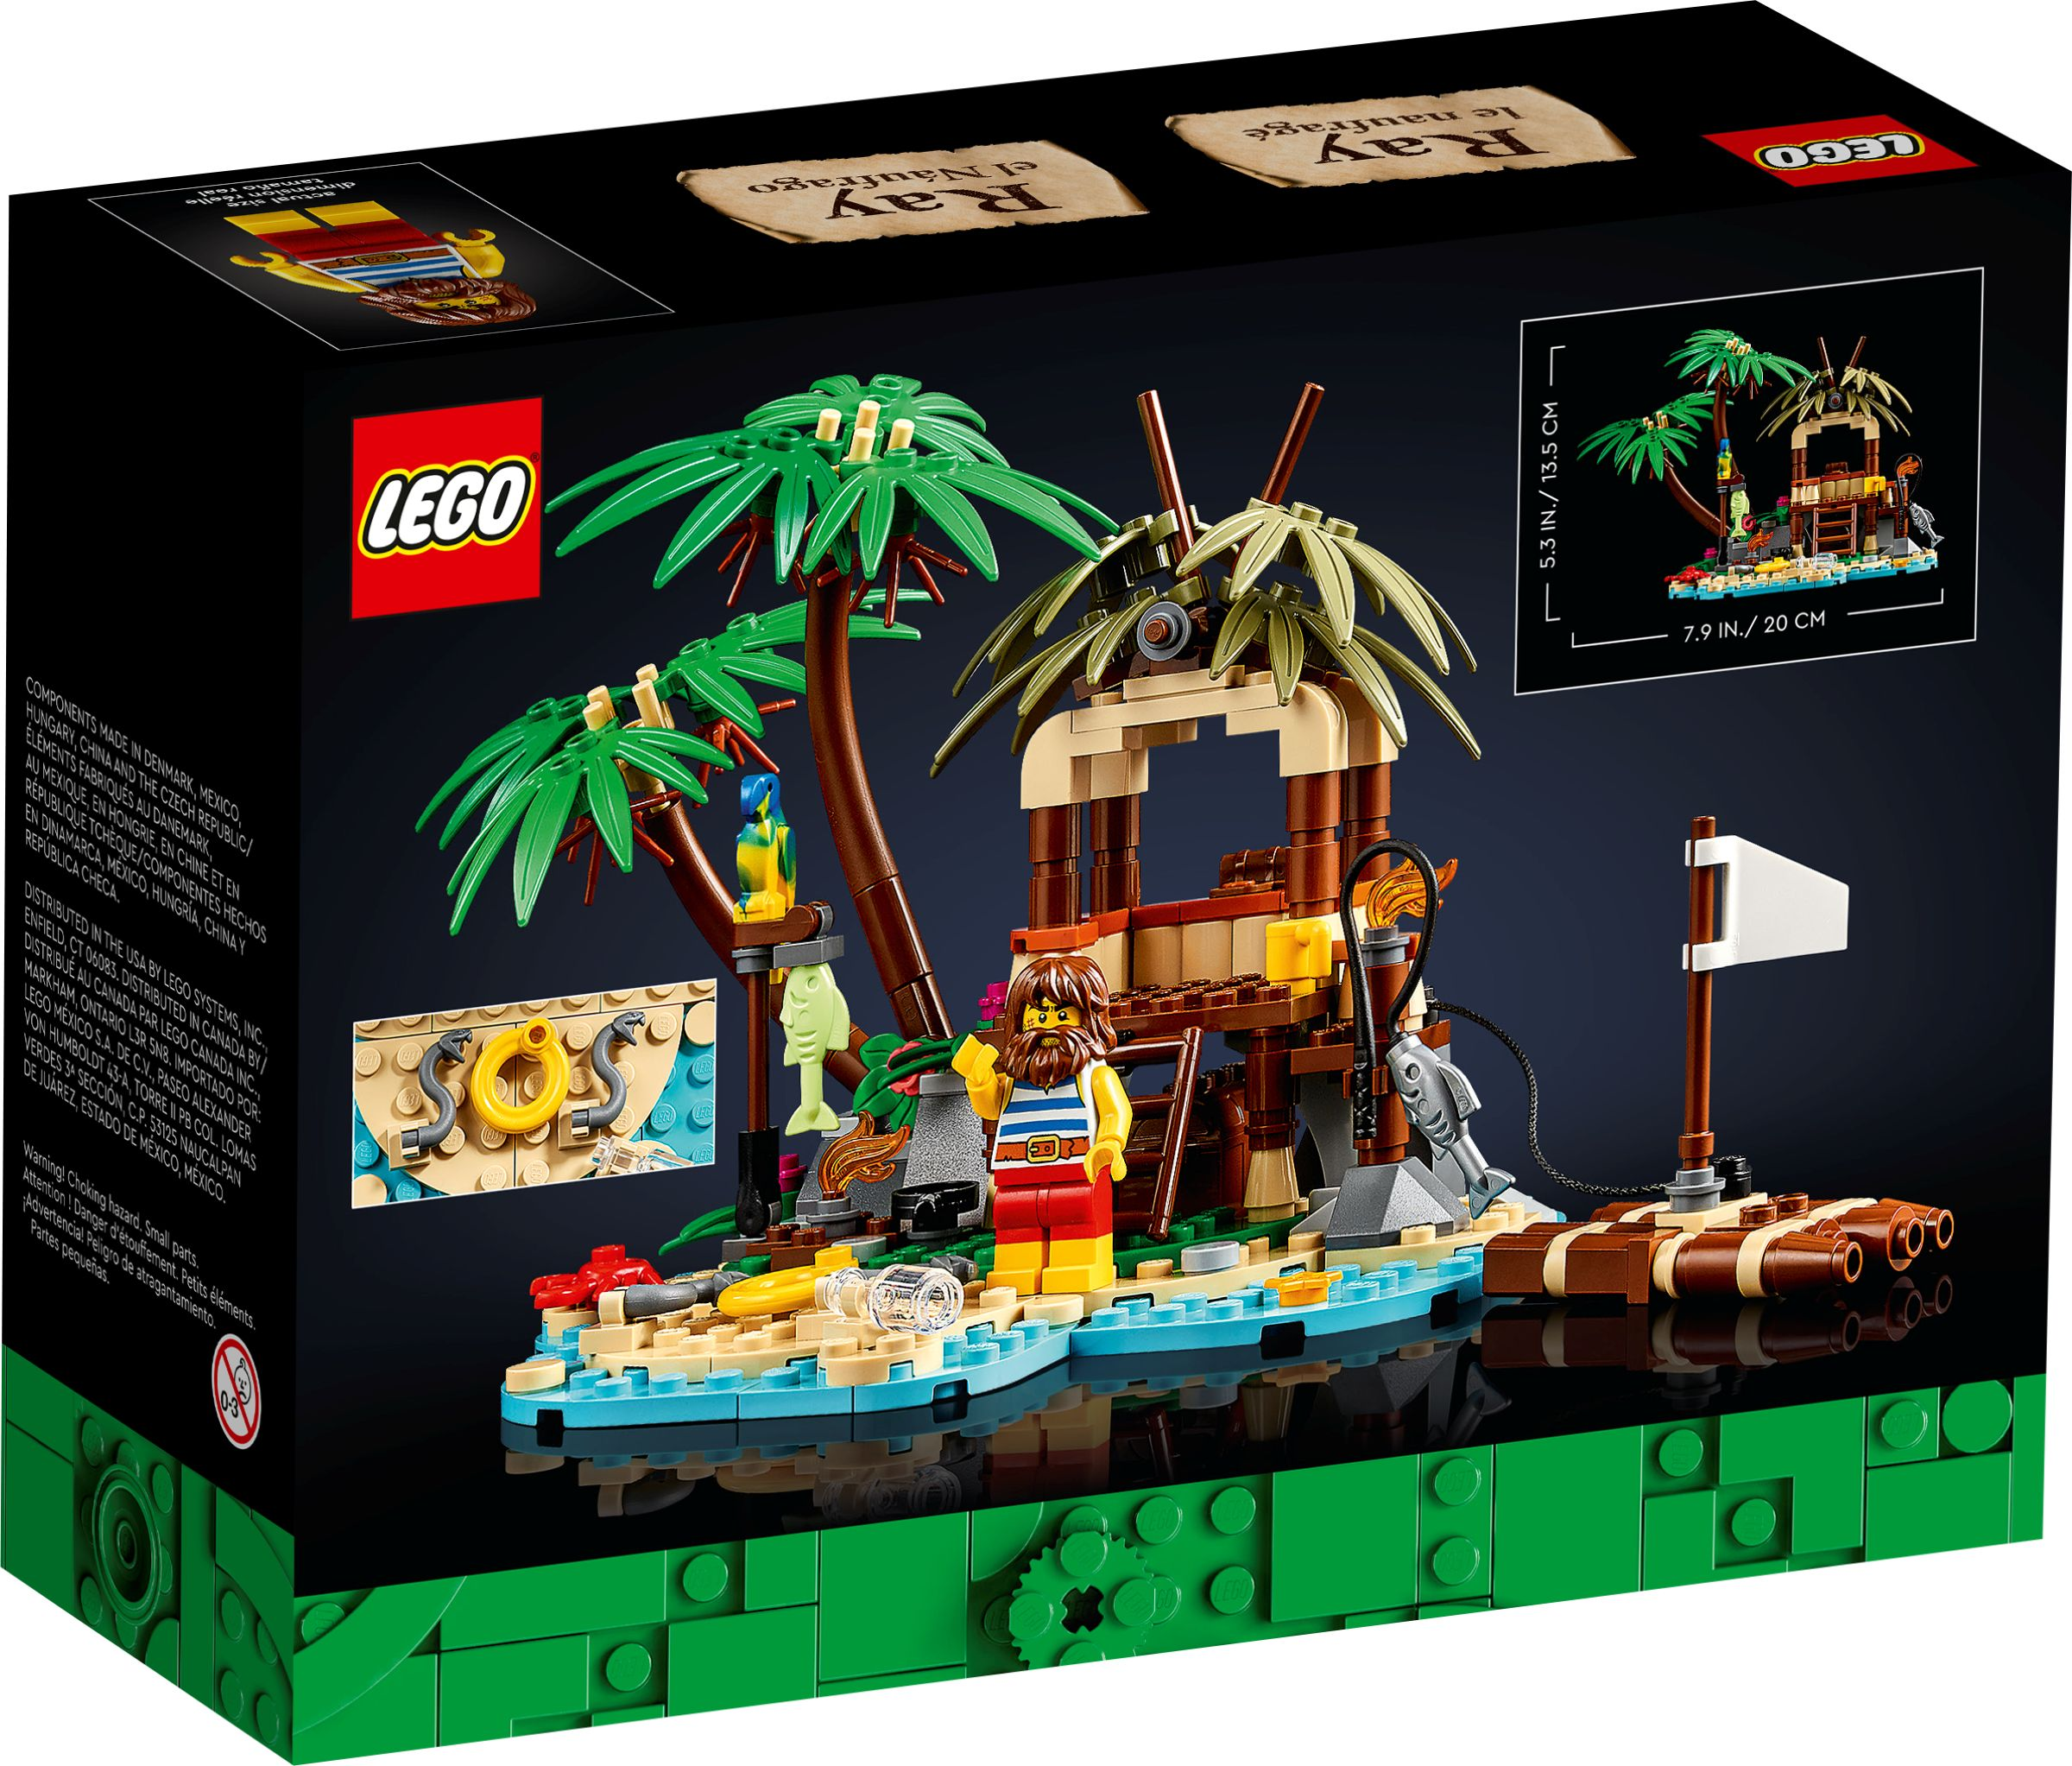 LEGO Ray Bausatz 40566 Schiffbrüchige der